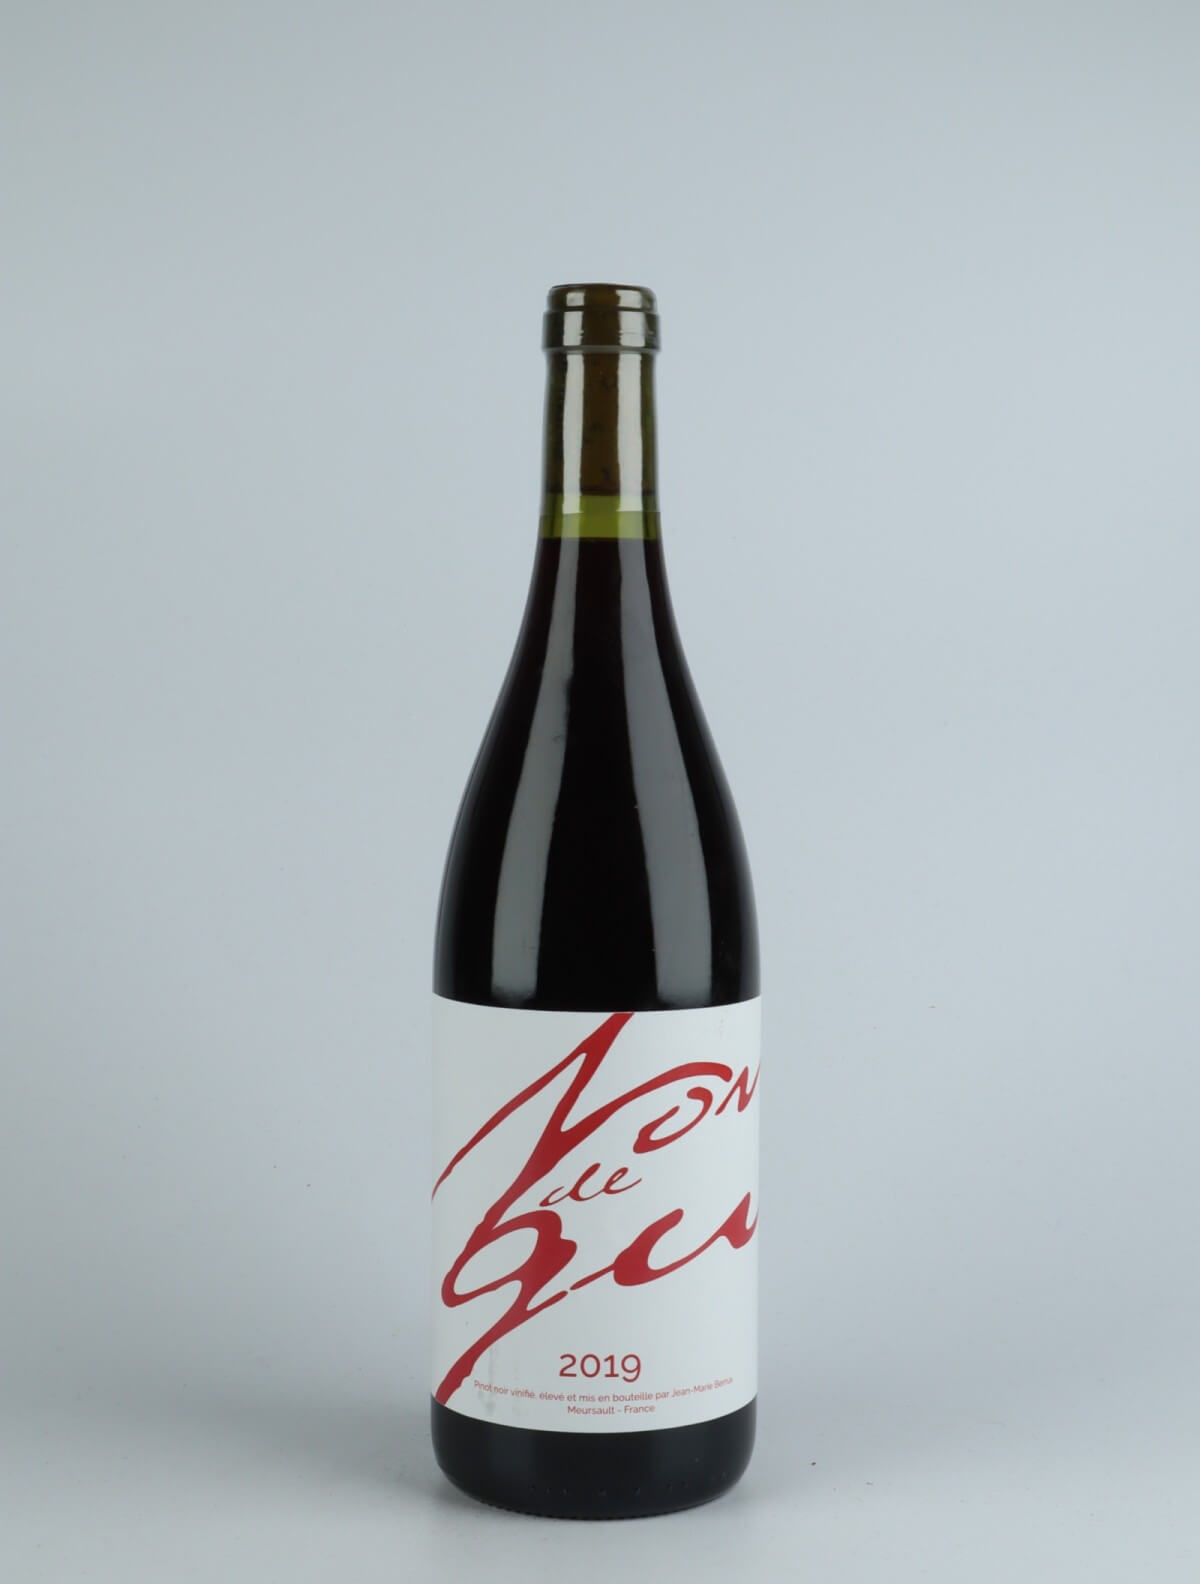 En flaske 2019 Nondegu Rødvin fra Jean-Marie Berrux, Bourgogne i Frankrig